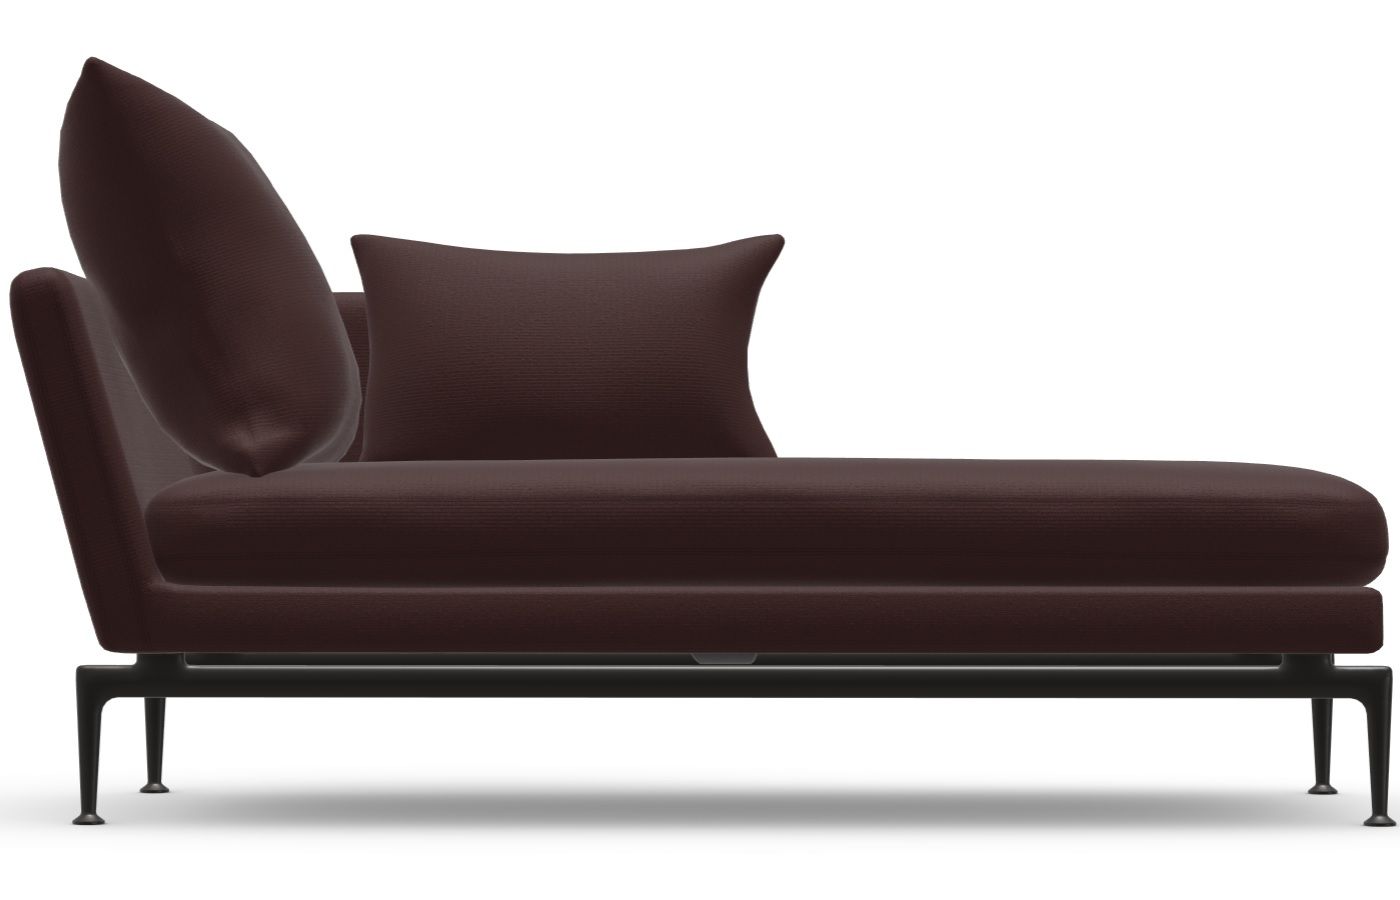 Vitra designové sedačky Suita Chaise Longue Small (šířka 170 cm) - DESIGNPROPAGANDA